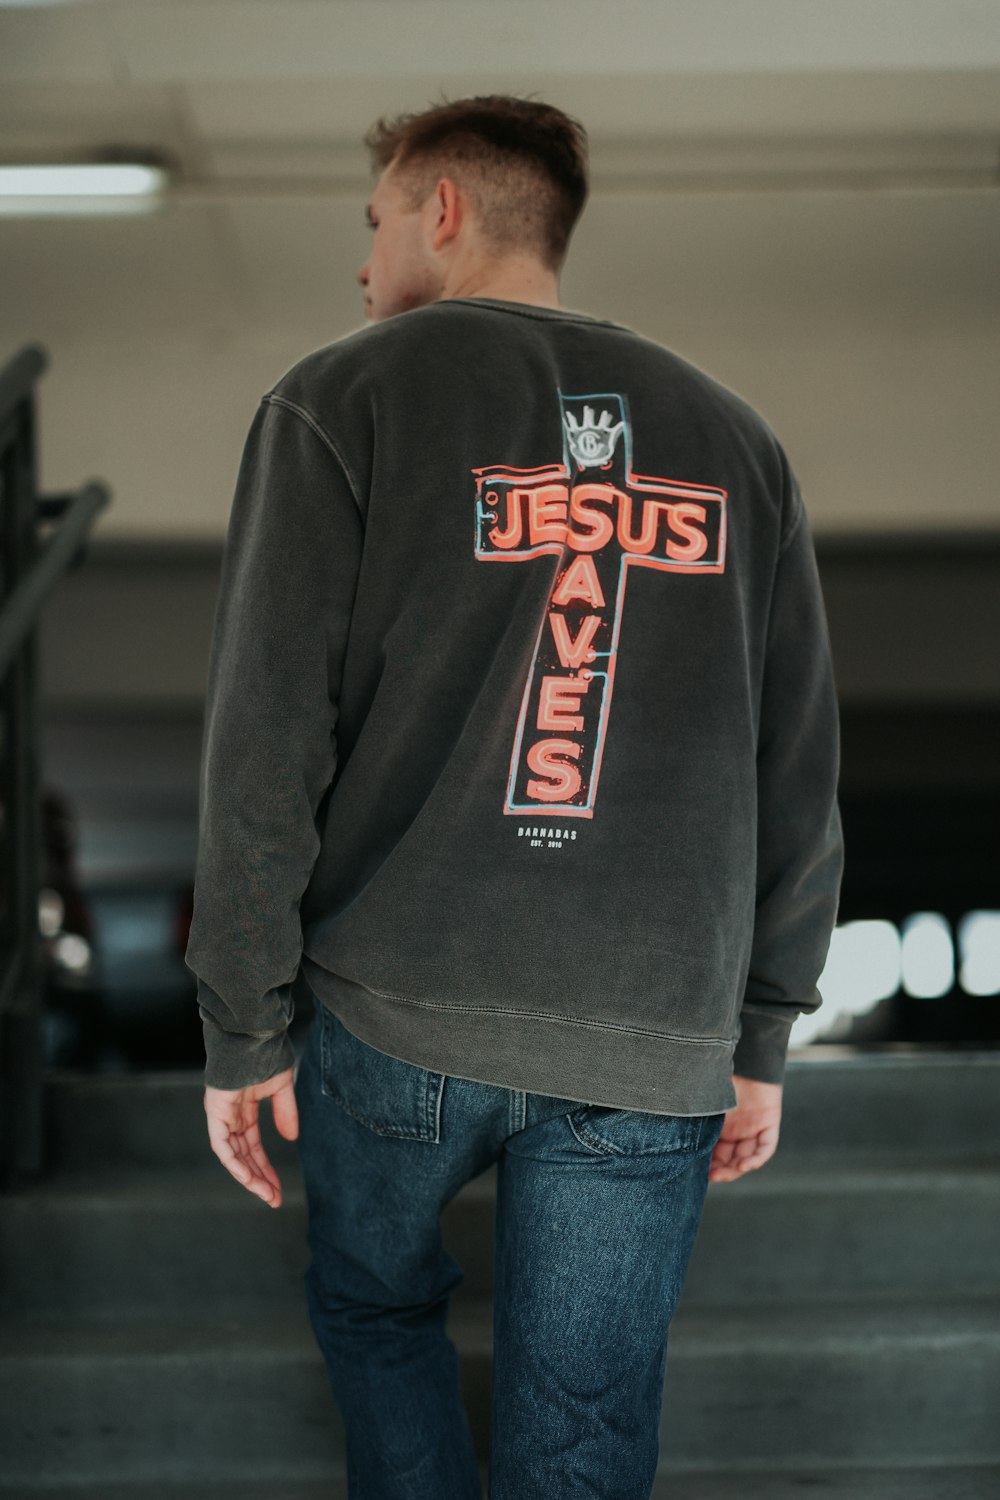 a man wearing a sweatshirt with a cross on it